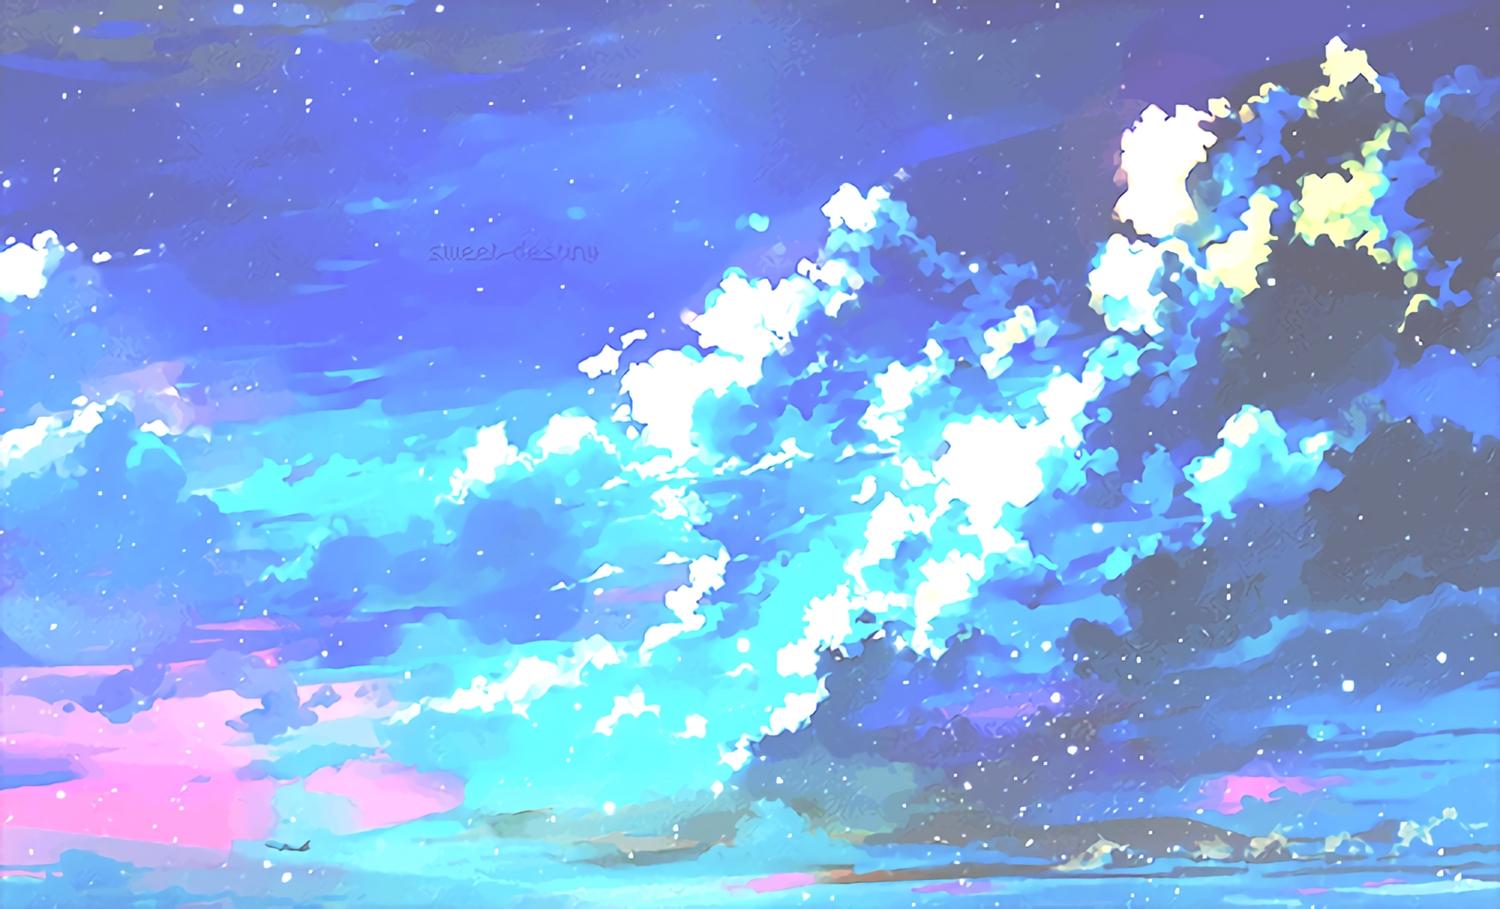 1500x909 Aesthetic Anime Sky Desktop Wallpaper.